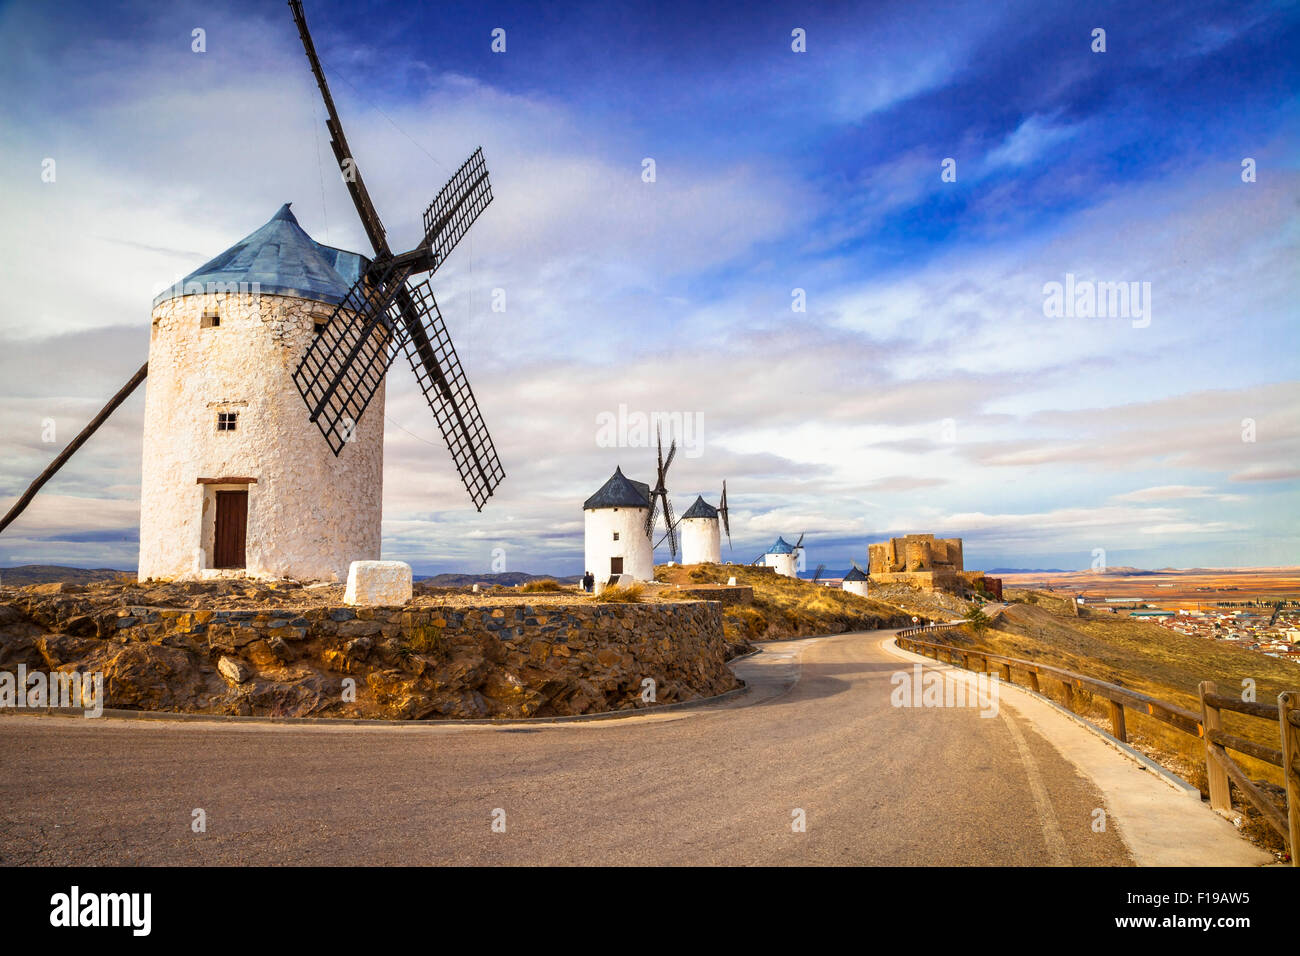 Les moulins à vent de Don Quichotte dans Cosuegra, Espagne Banque D'Images